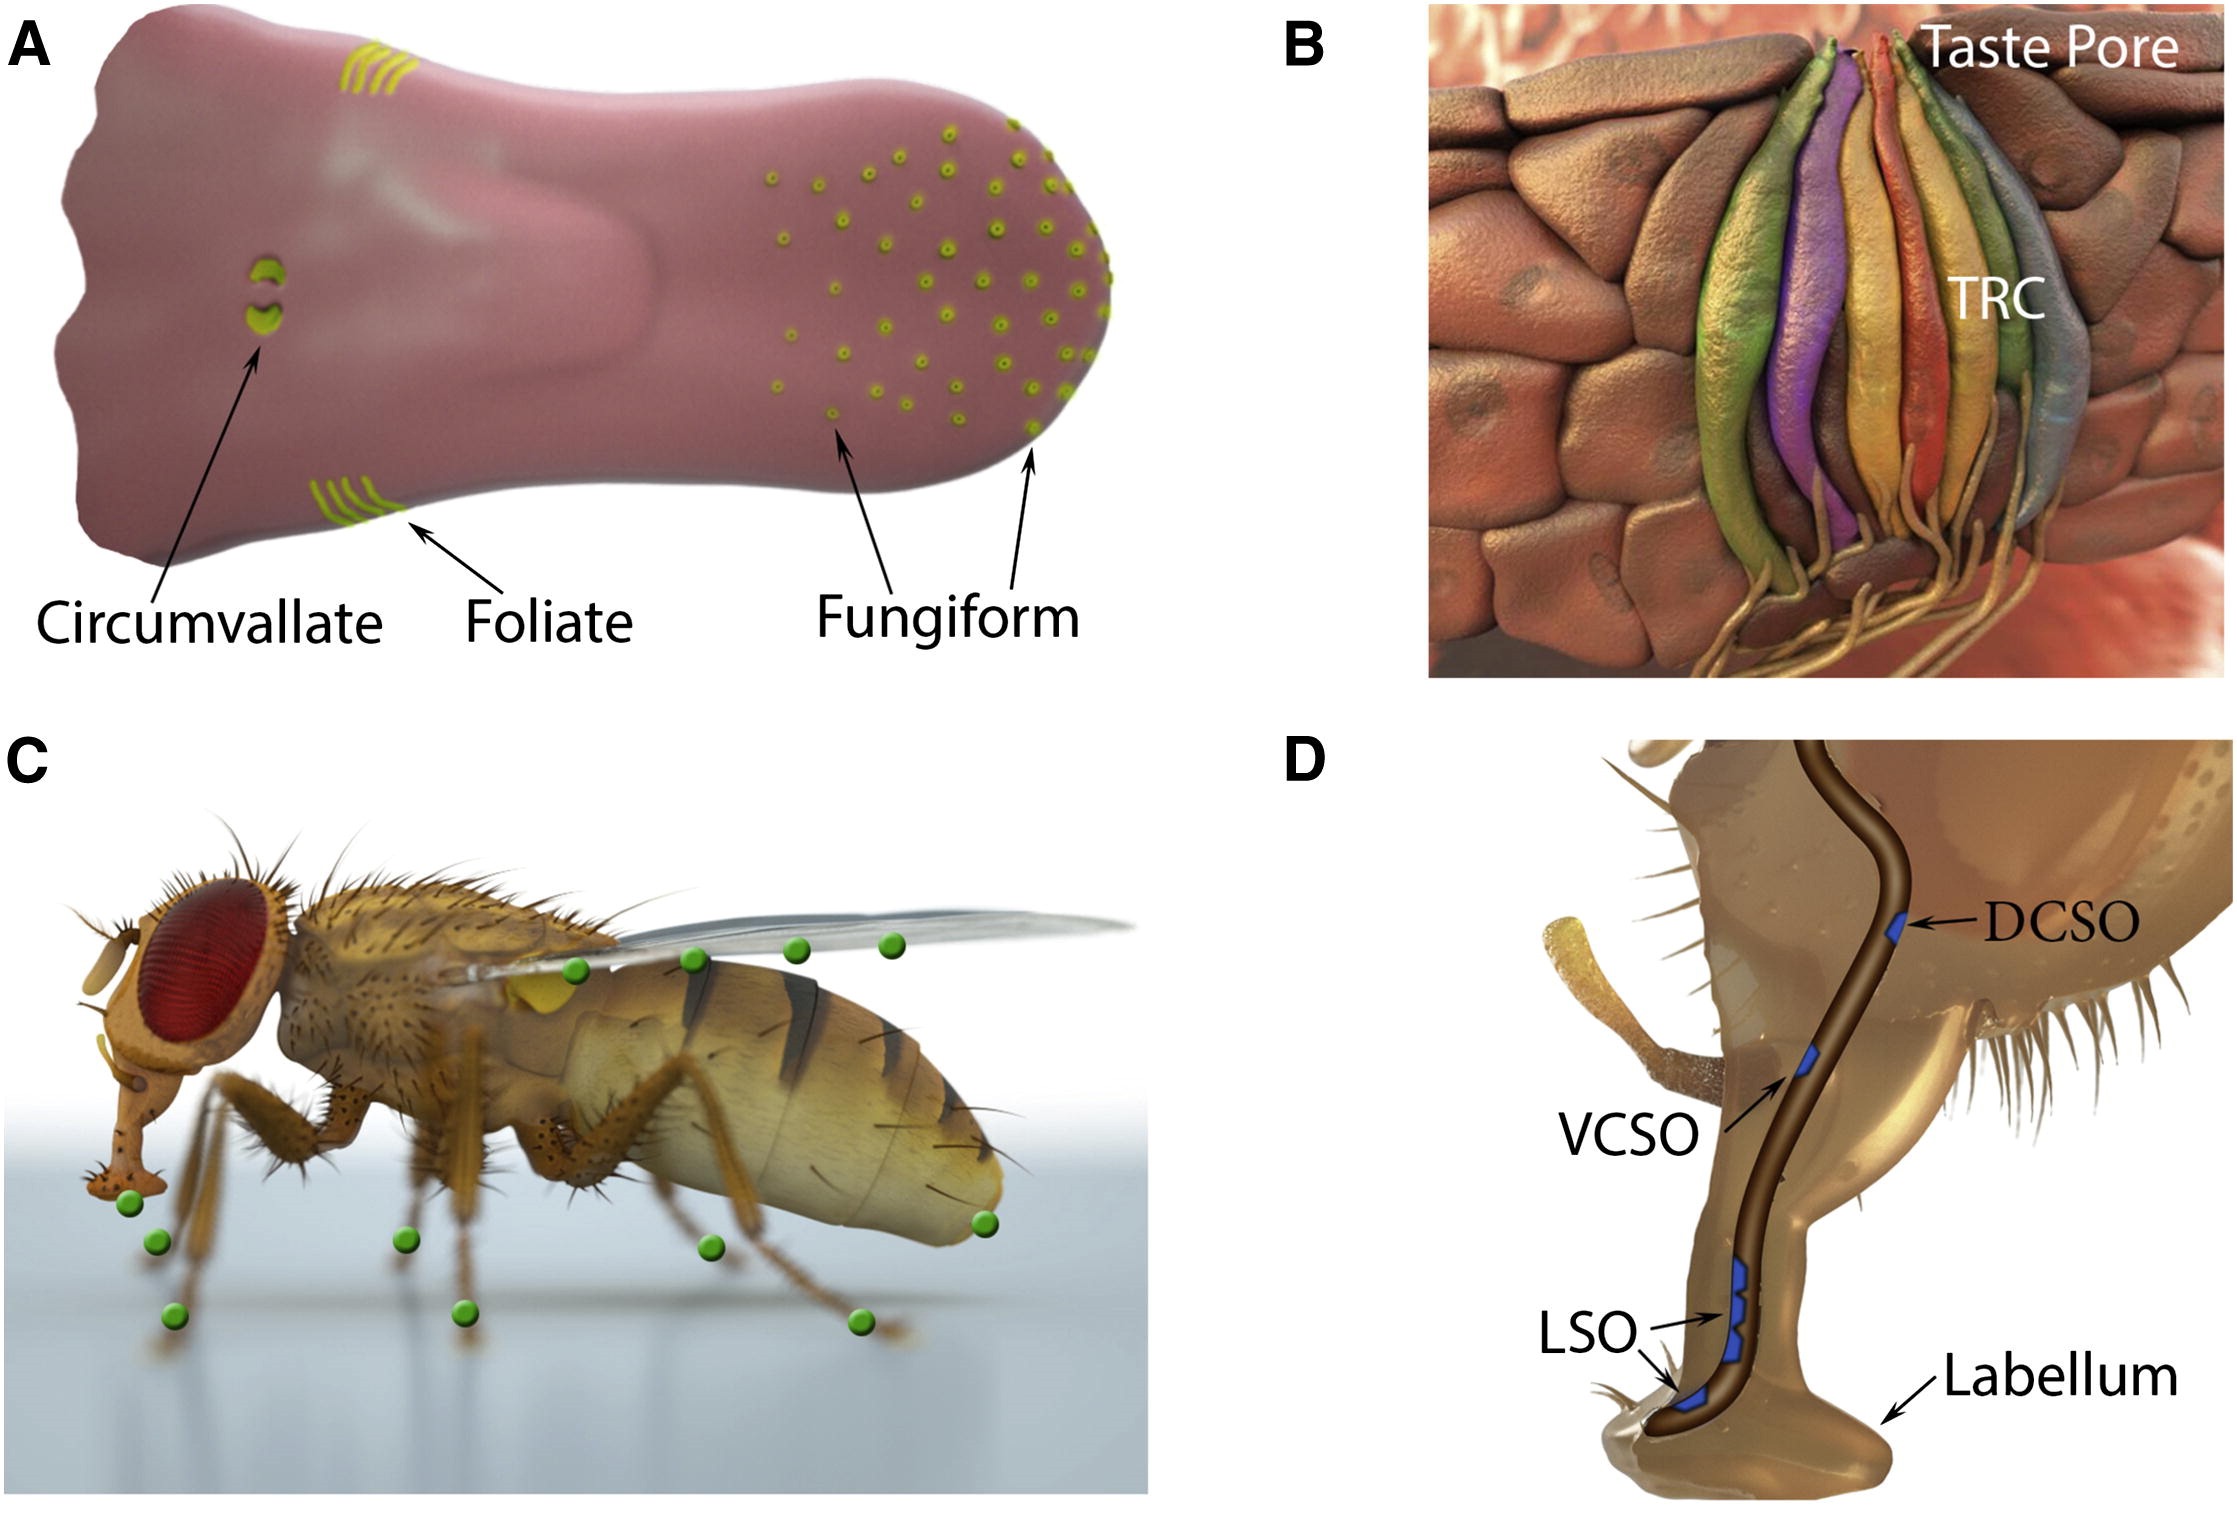 Les organes du goût chez les mammifères et la mouche drosophile, Liman et al., 2014